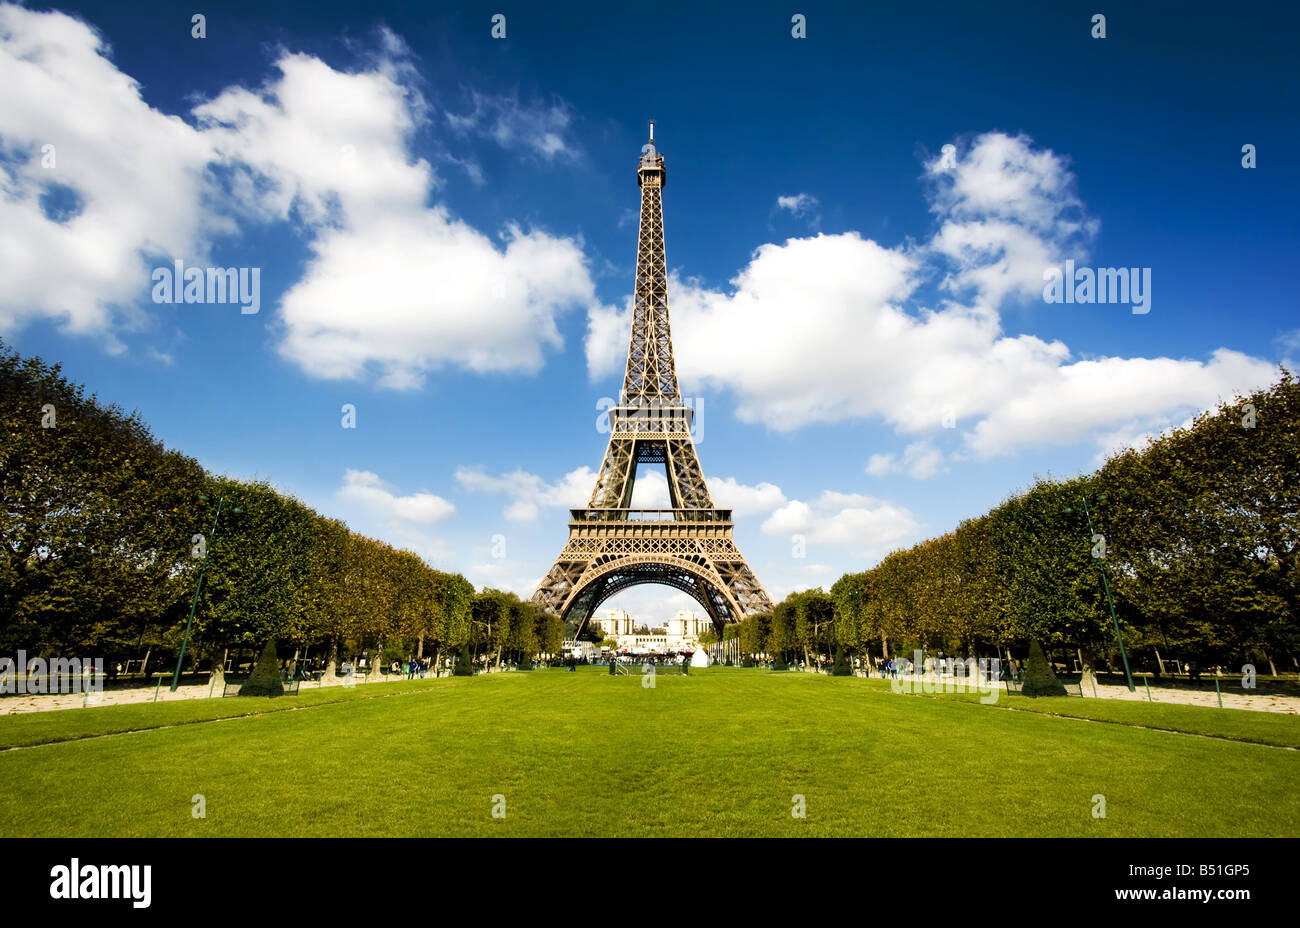 Schönes Foto von der Eiffelturm in Paris mit wunderschönen Farben und Weitwinkel Zentralperspektive Stockfoto